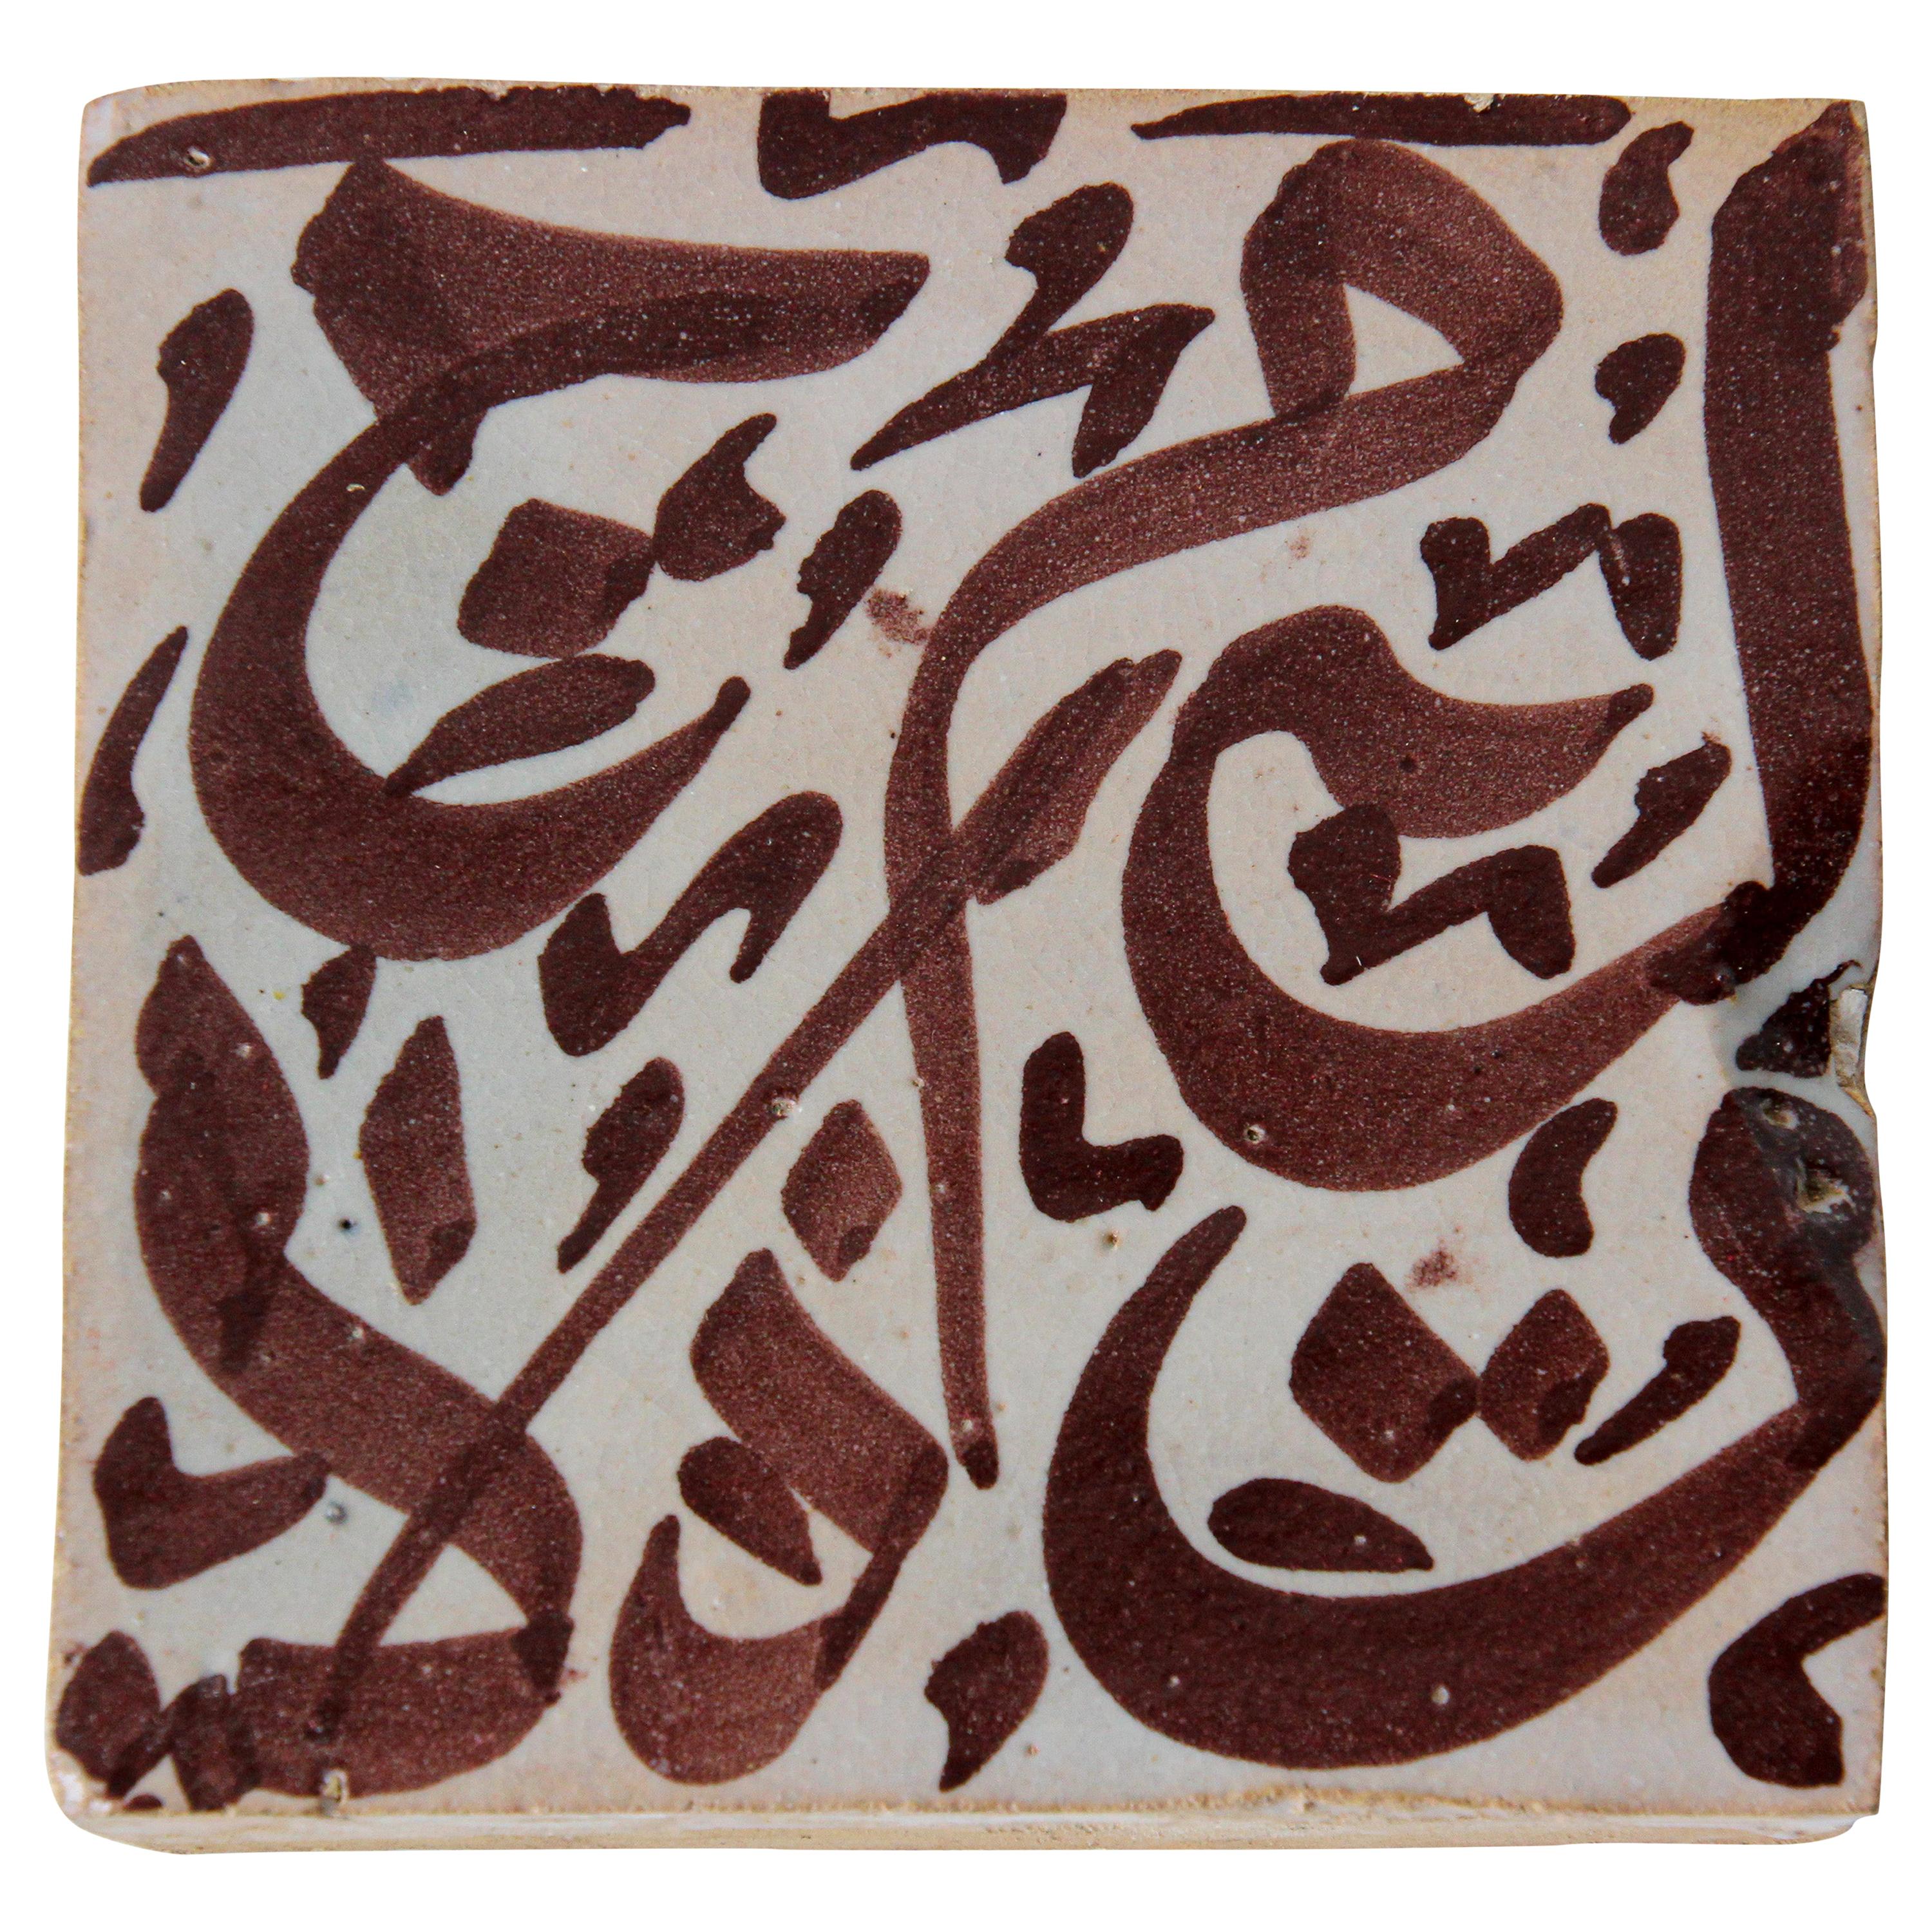 Moorish Tile with Arabic Writing in Brown